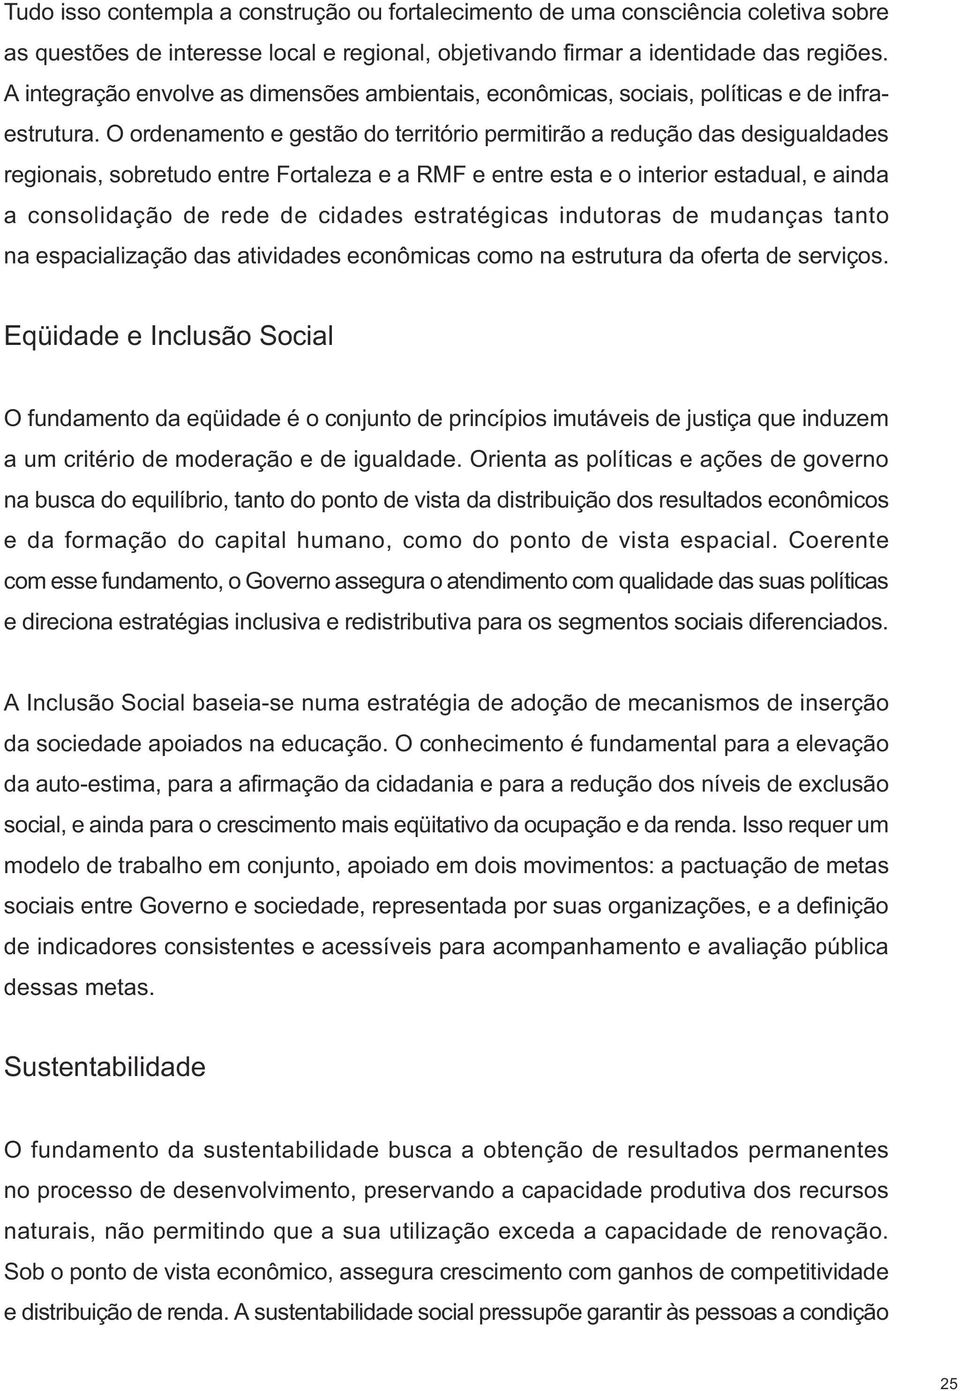 O ordenamento e gestão do território permitirão a redução das desigualdades regionais, sobretudo entre Fortaleza e a RMF e entre esta e o interior estadual, e ainda a consolidação de rede de cidades